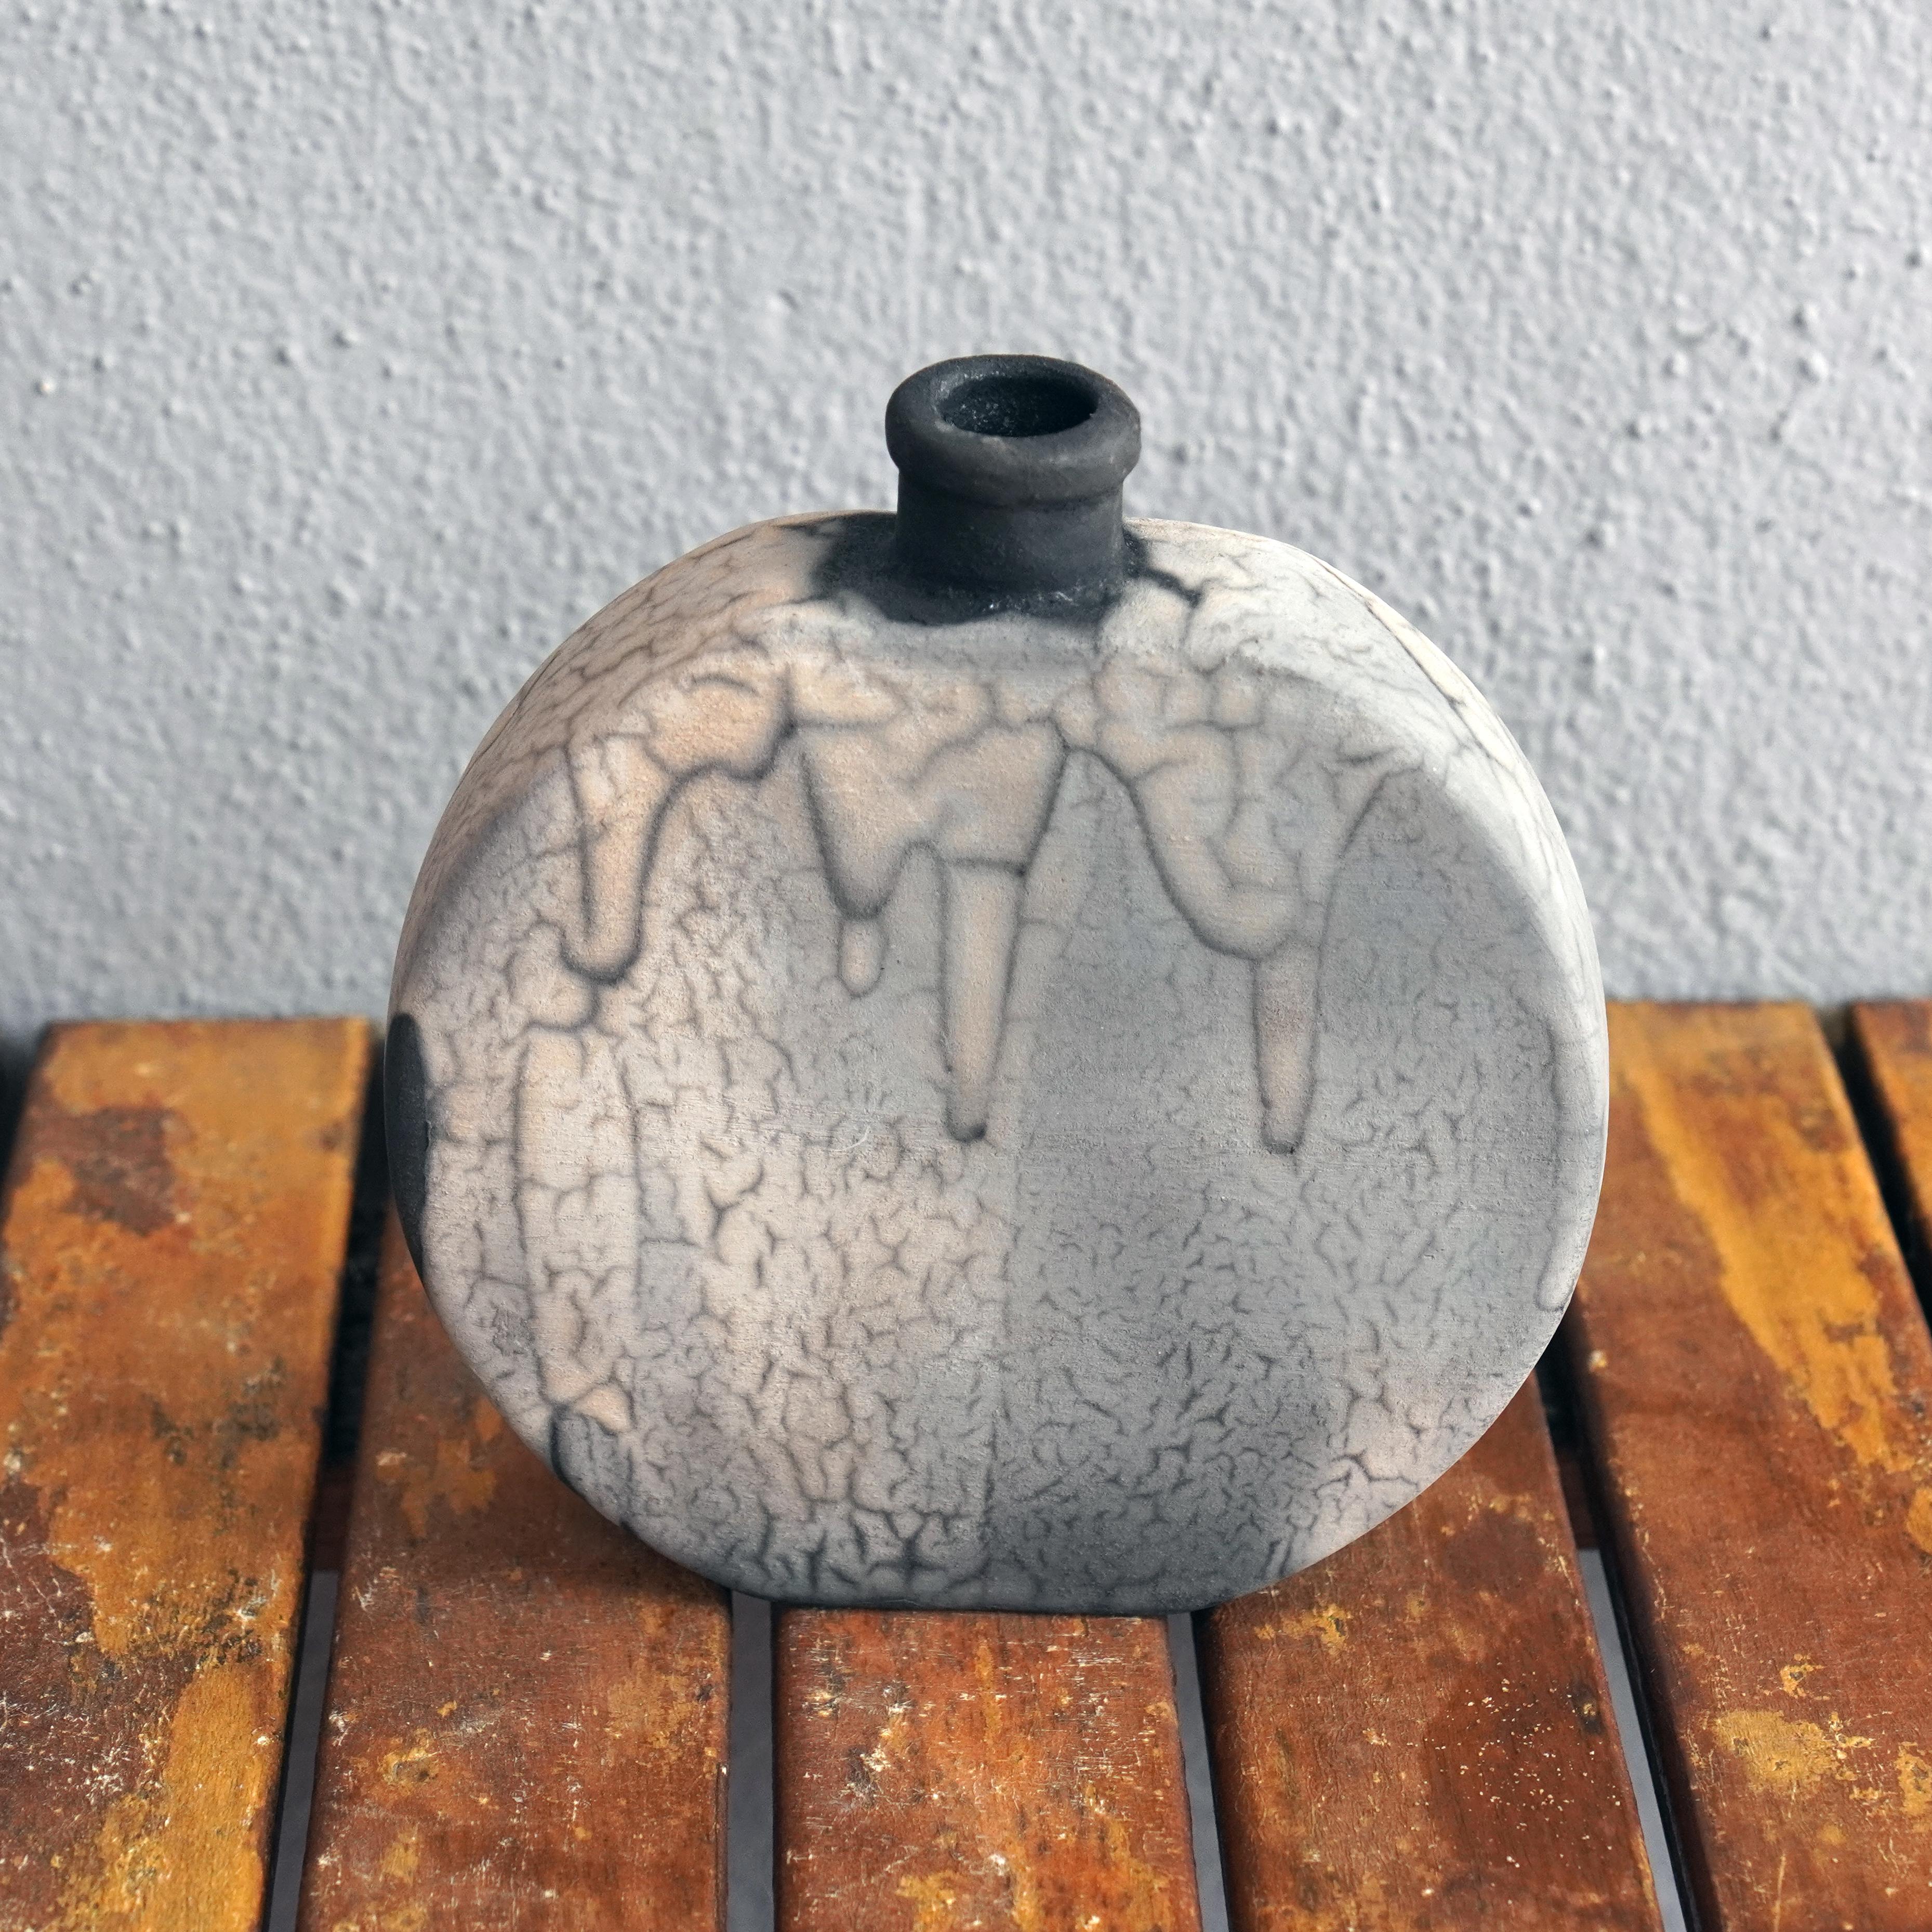 Kumo ( 雲 ) - (n) nuage

Notre vase Kumo est un vase globe aplati avec une base et une ouverture étroites. Sa forme contemporaine promet de s'intégrer à tous les styles d'intérieur.

Le vase Kumo se marie parfaitement avec le vase Nozomu. Cependant,